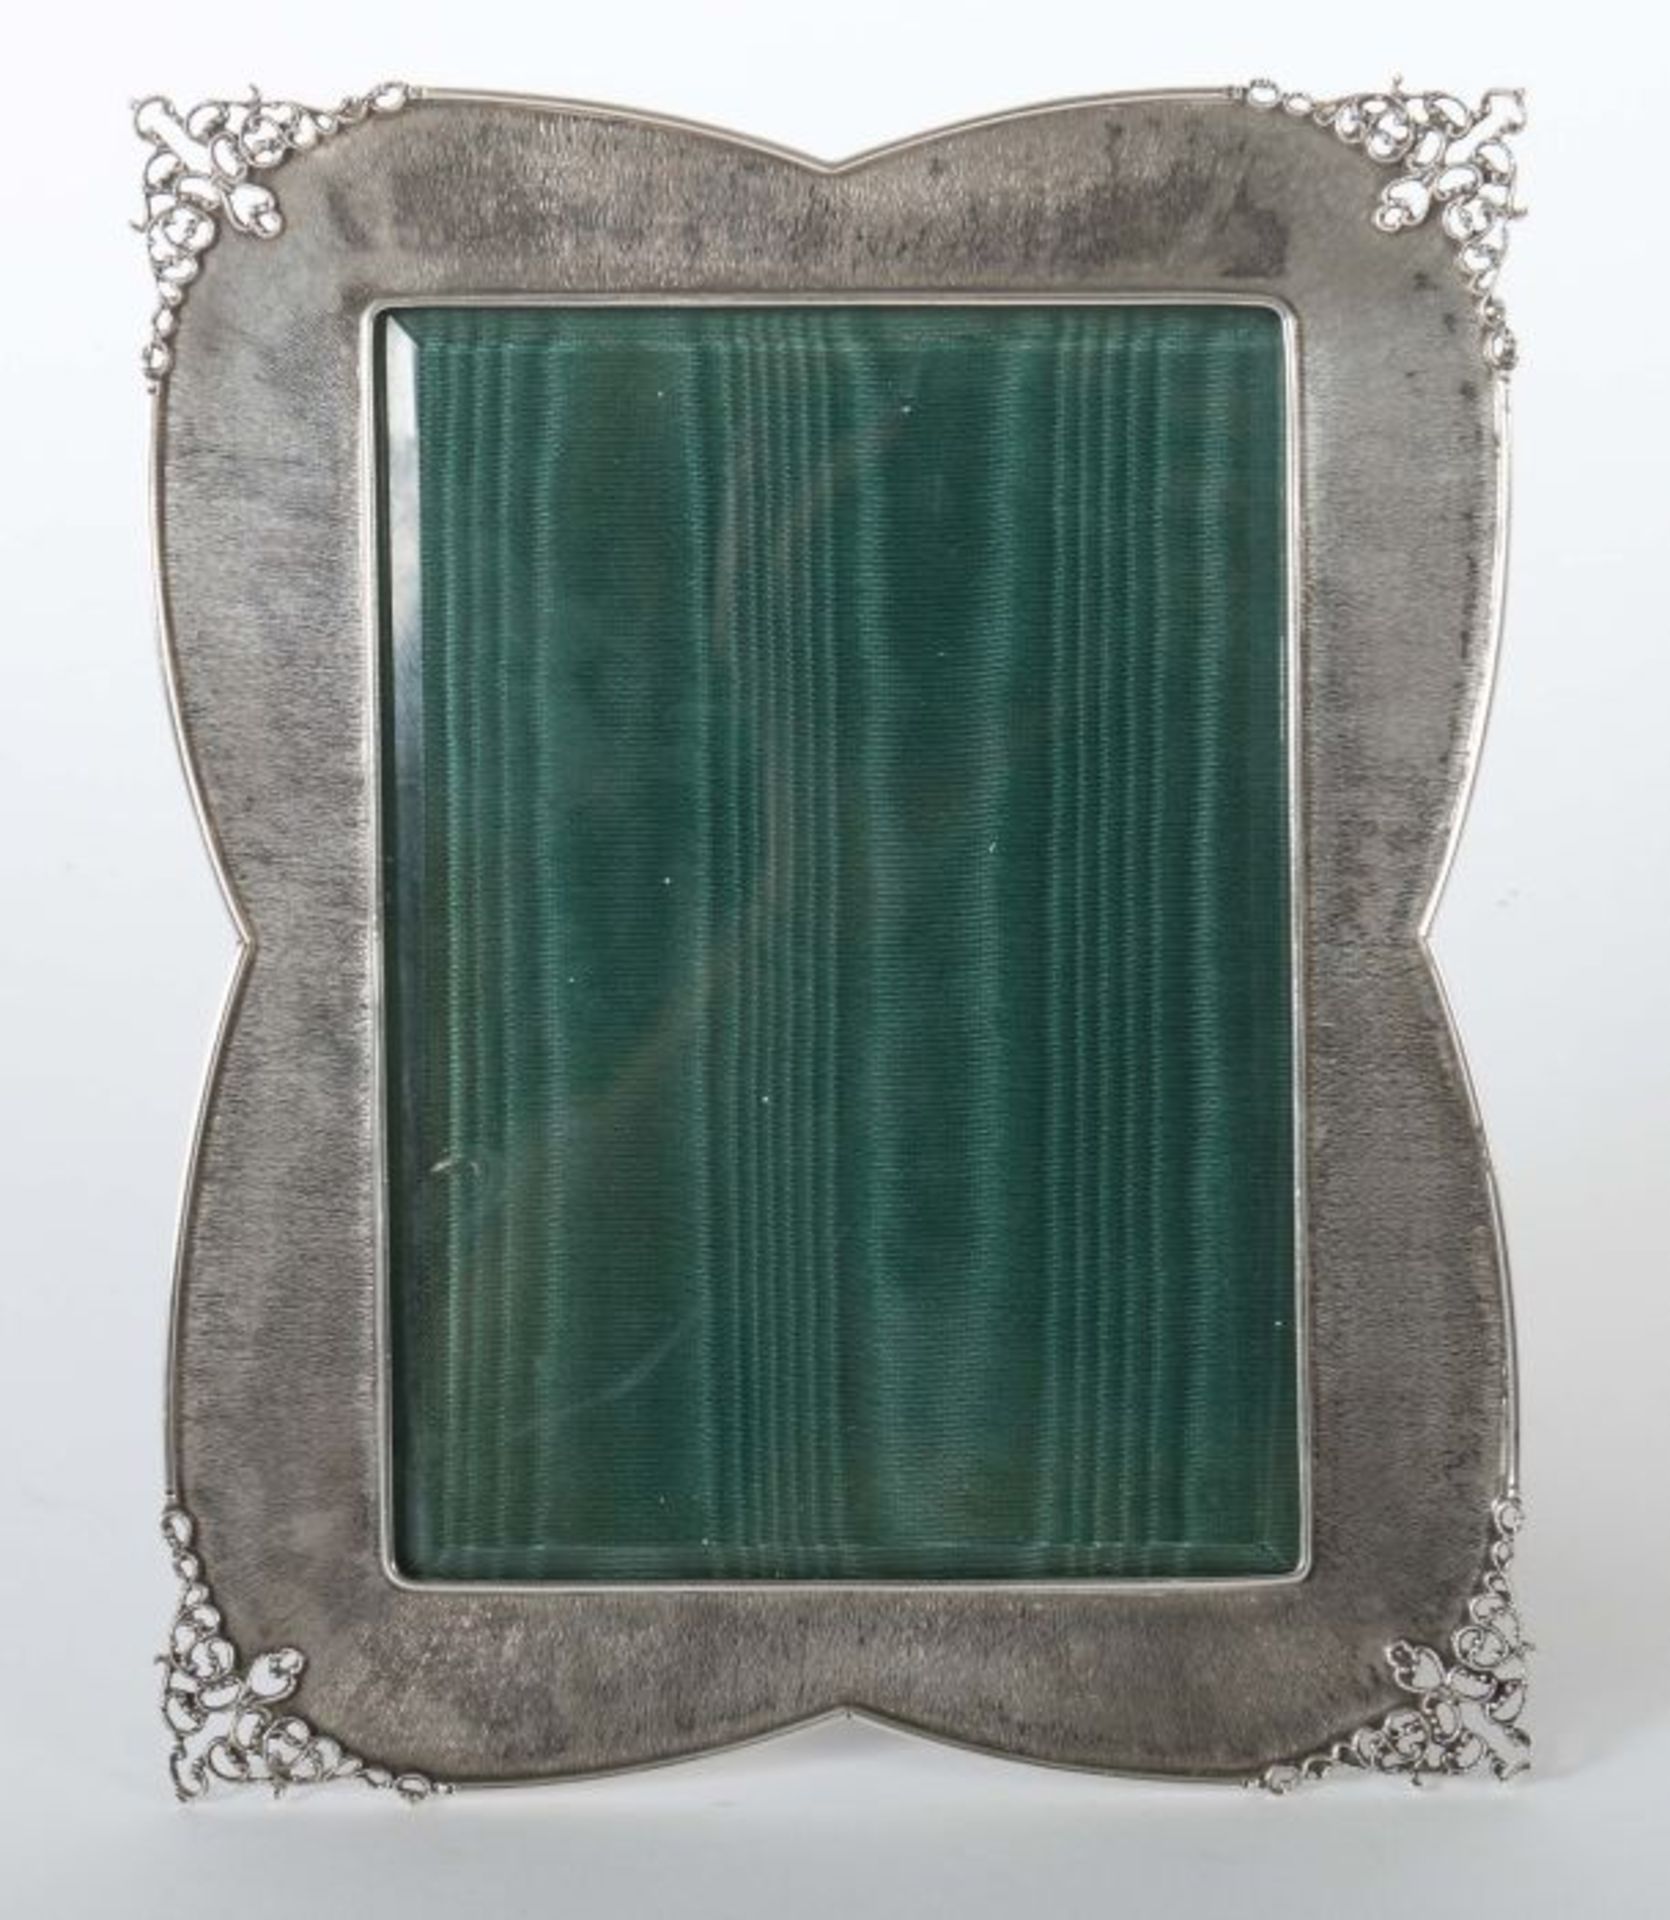 Stellrahmen 1. Drittel 20. Jh., Silber 800/Glas, ca. 167 g (Silber), rechteckige geschwungene Form